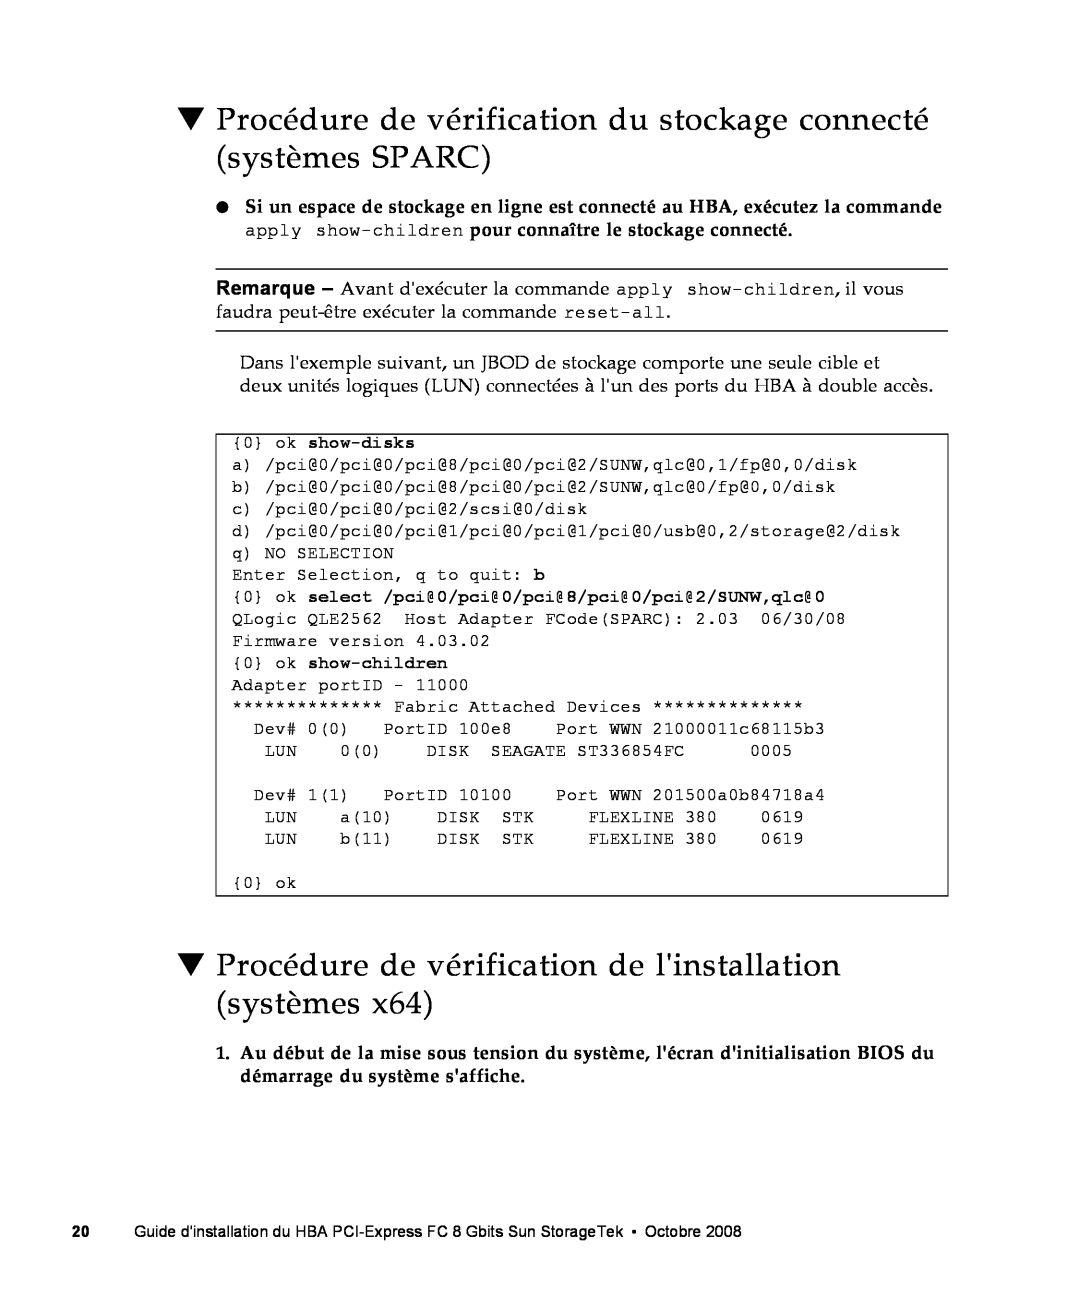 Sun Microsystems SG-XPCIE2FC-QF8-Z manual Procédure de vérification du stockage connecté systèmes SPARC, ok show-disks 